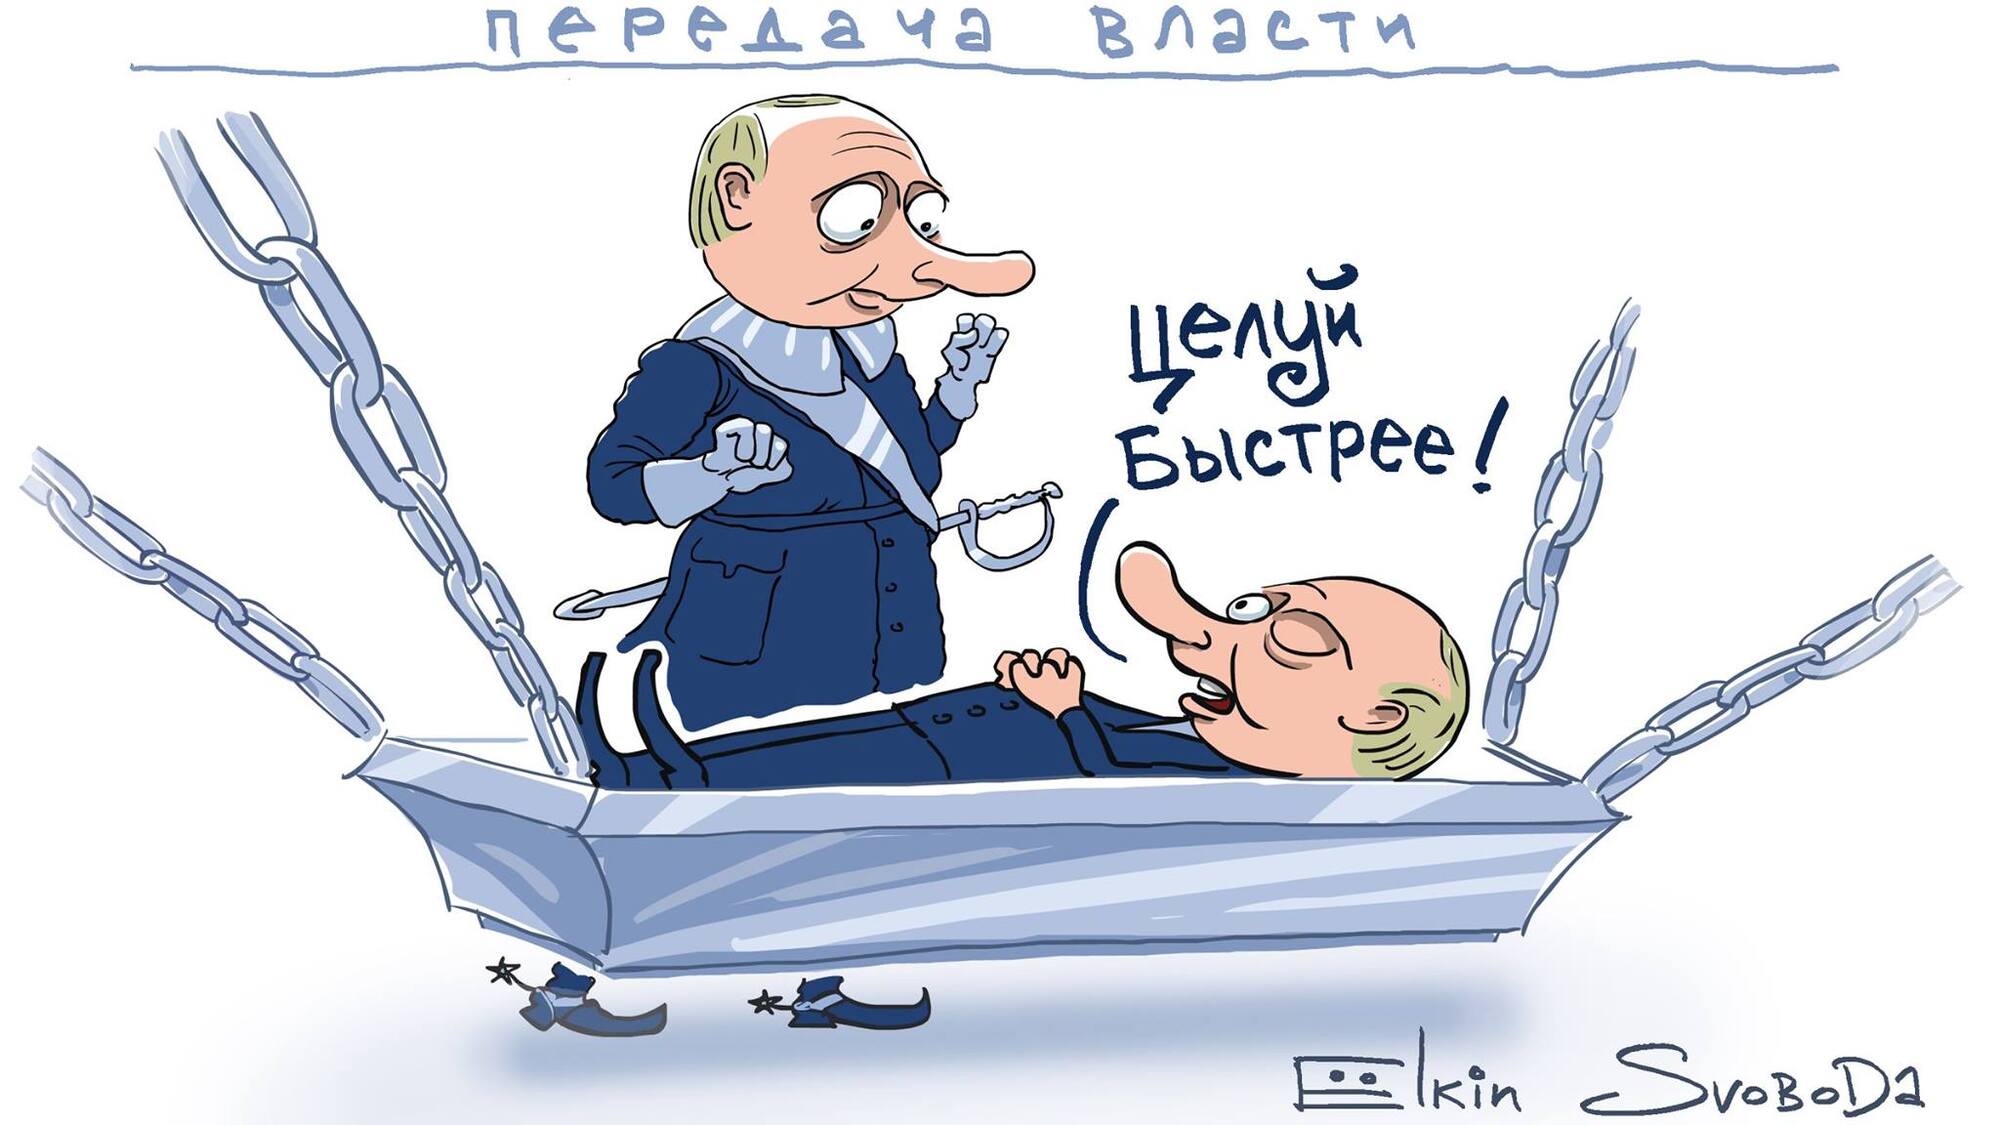 "Путін у труні": відомий карикатурист висміяв висунення президента Росії